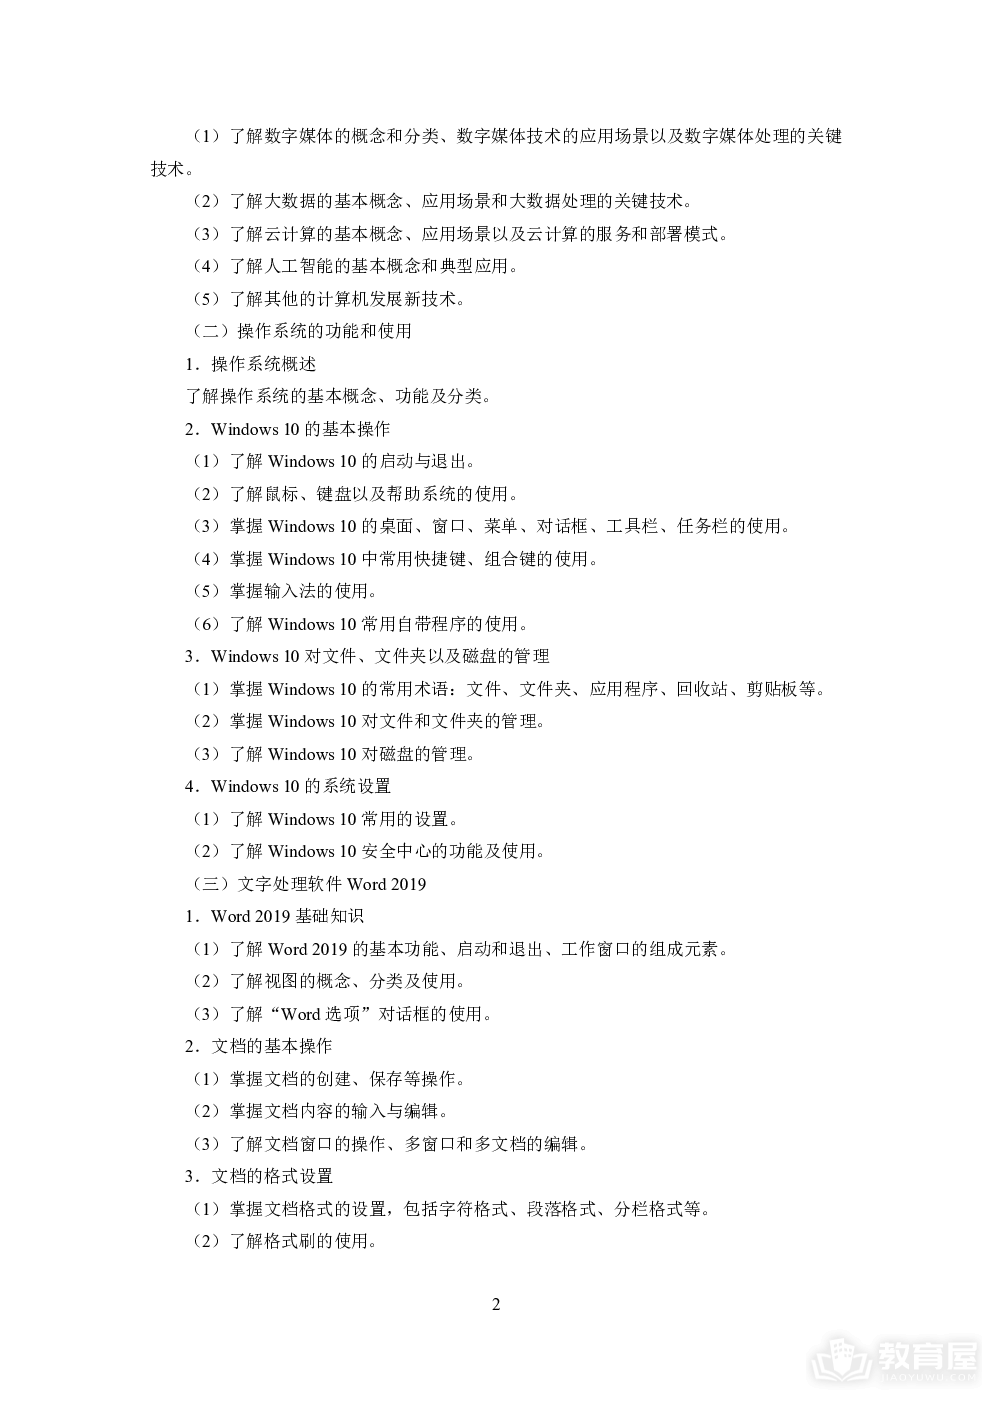 天津市高职升本科计算机考试大纲（2023年9月修订）